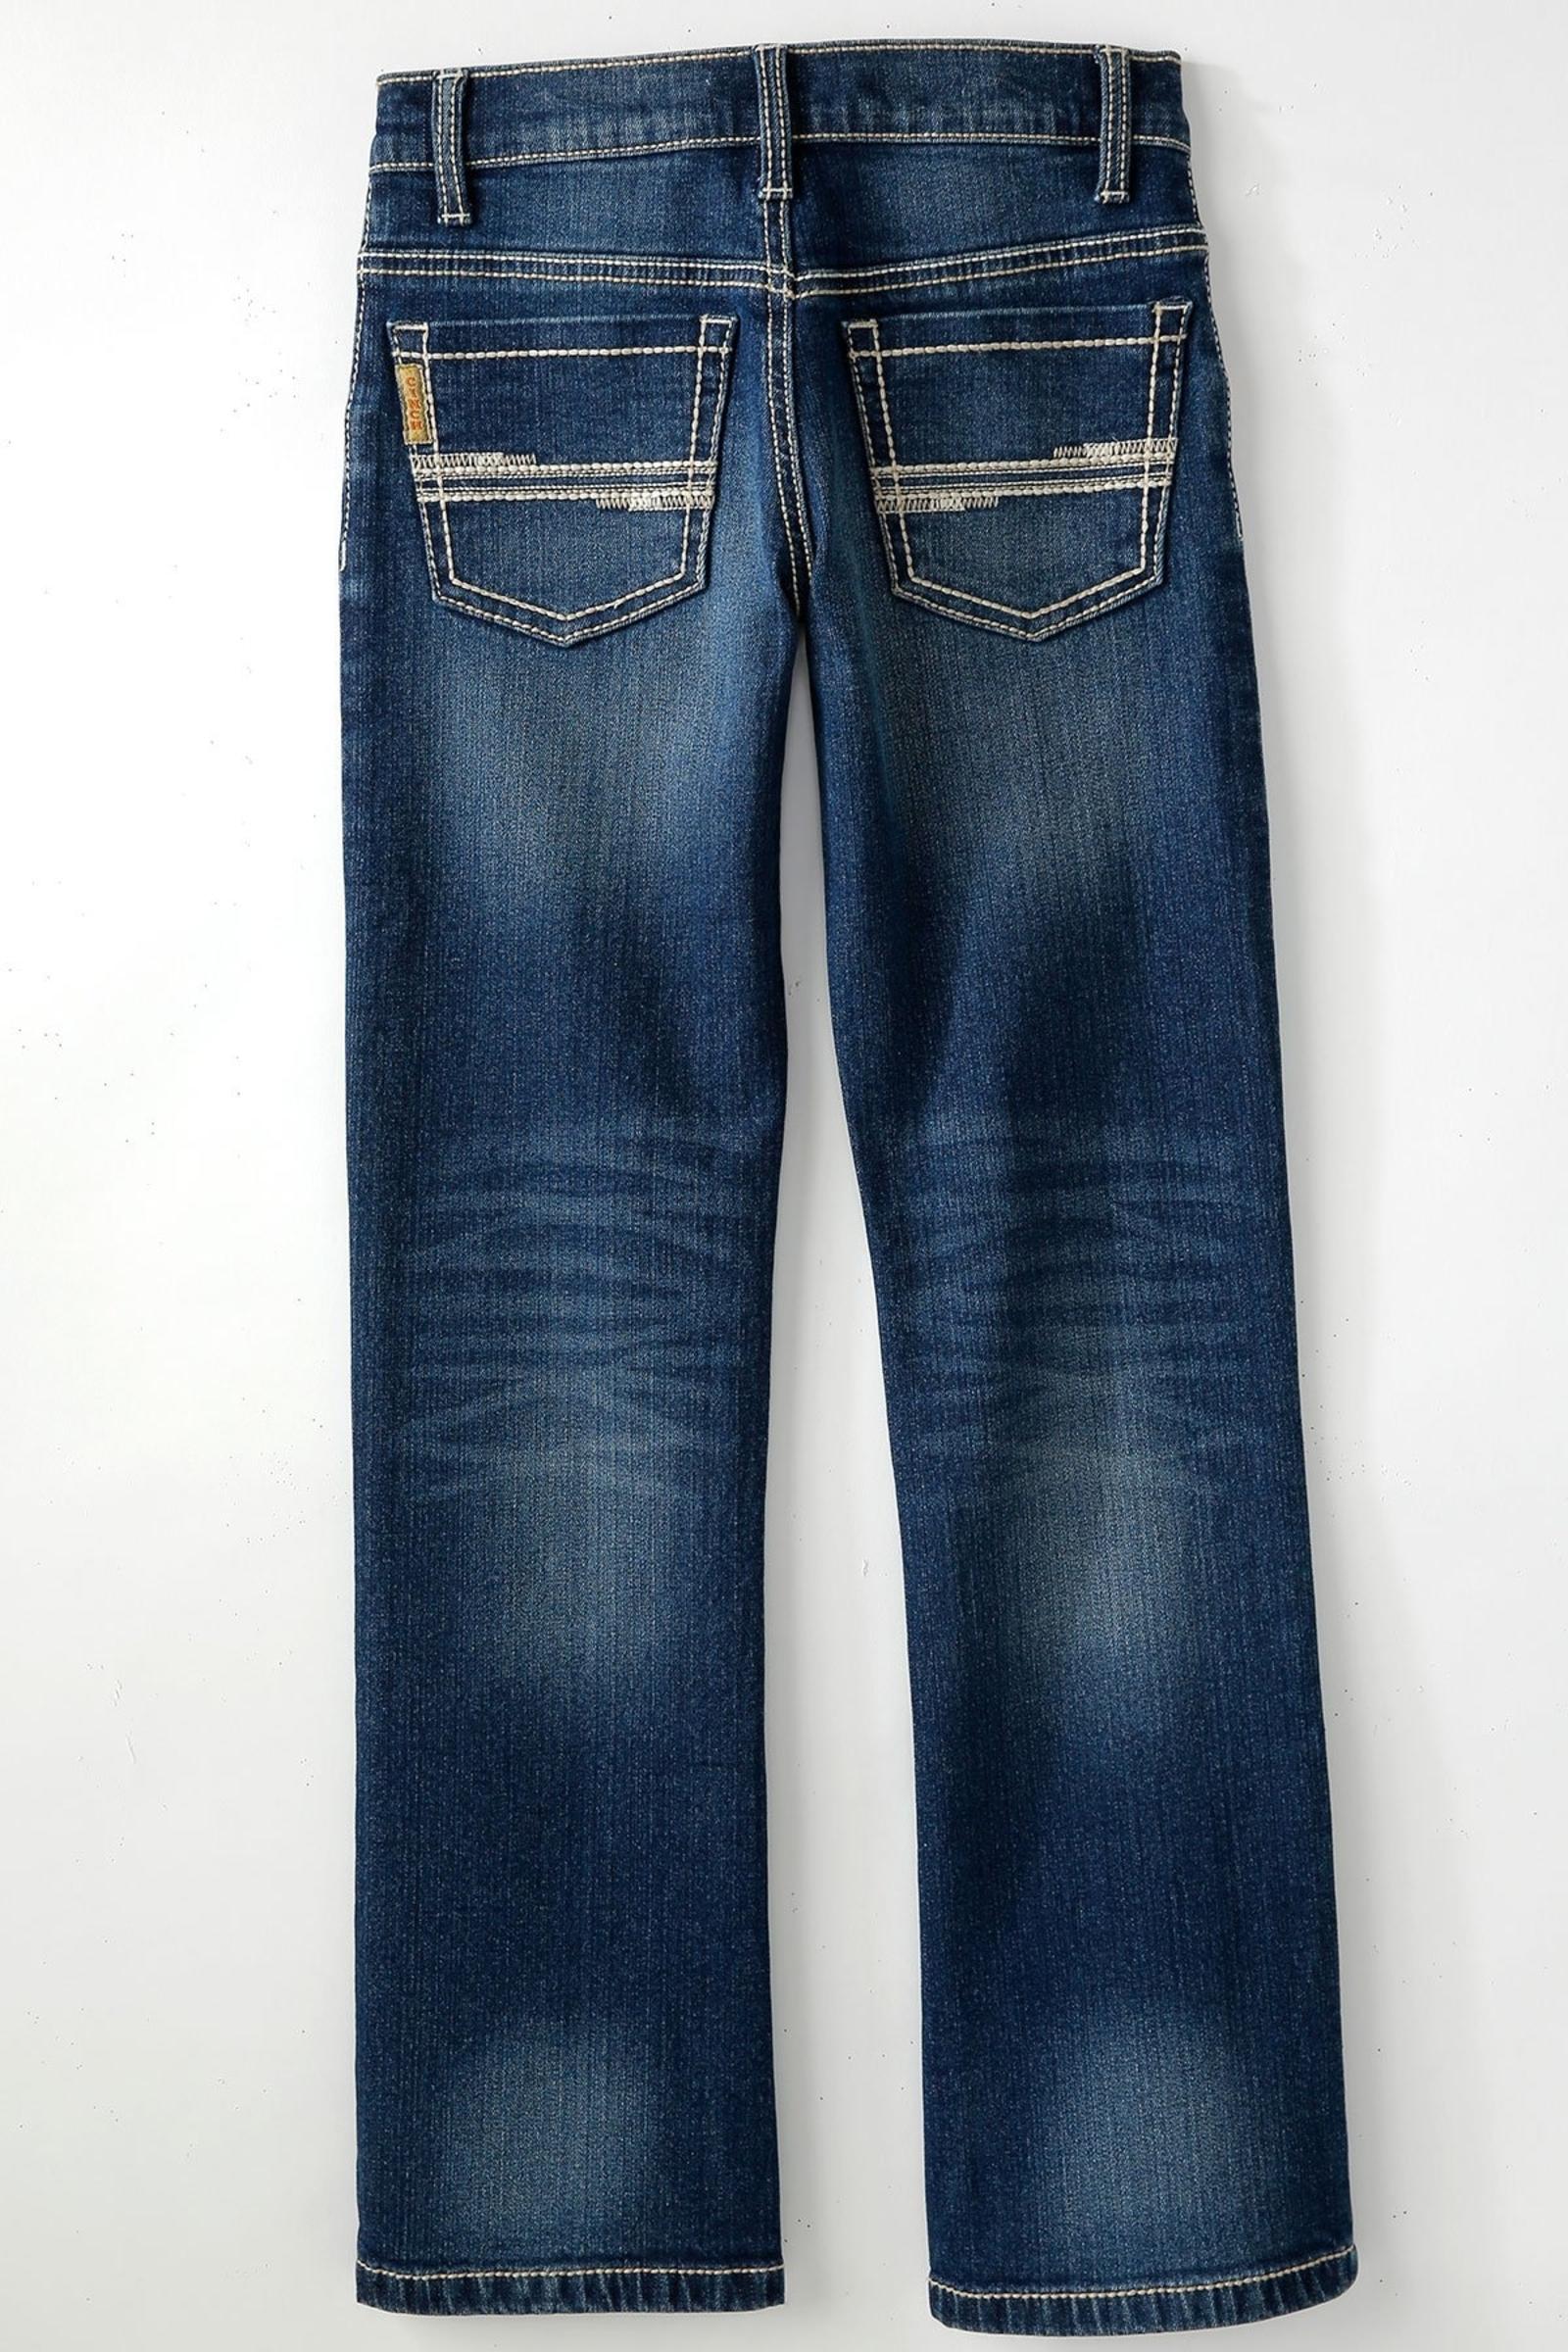 Cinch Jeans Boy's Slim Fit Jean - Dark Stonewash